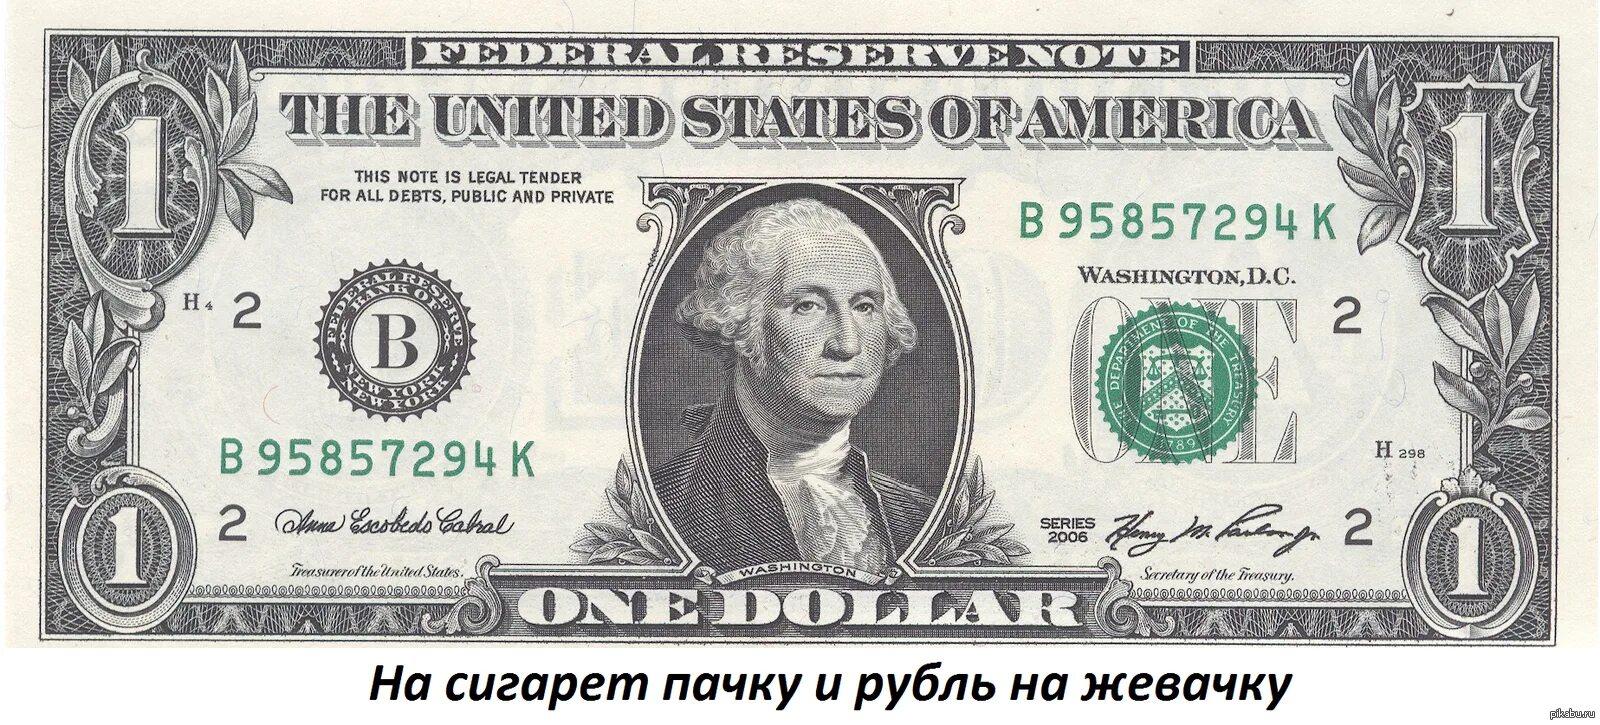 80 баксов в рублях. Однодолларовая купюра Джордж Вашингтон. Джордж Вашингтон на купюре. 1 Доллар США. Купюра 50 долларов США.